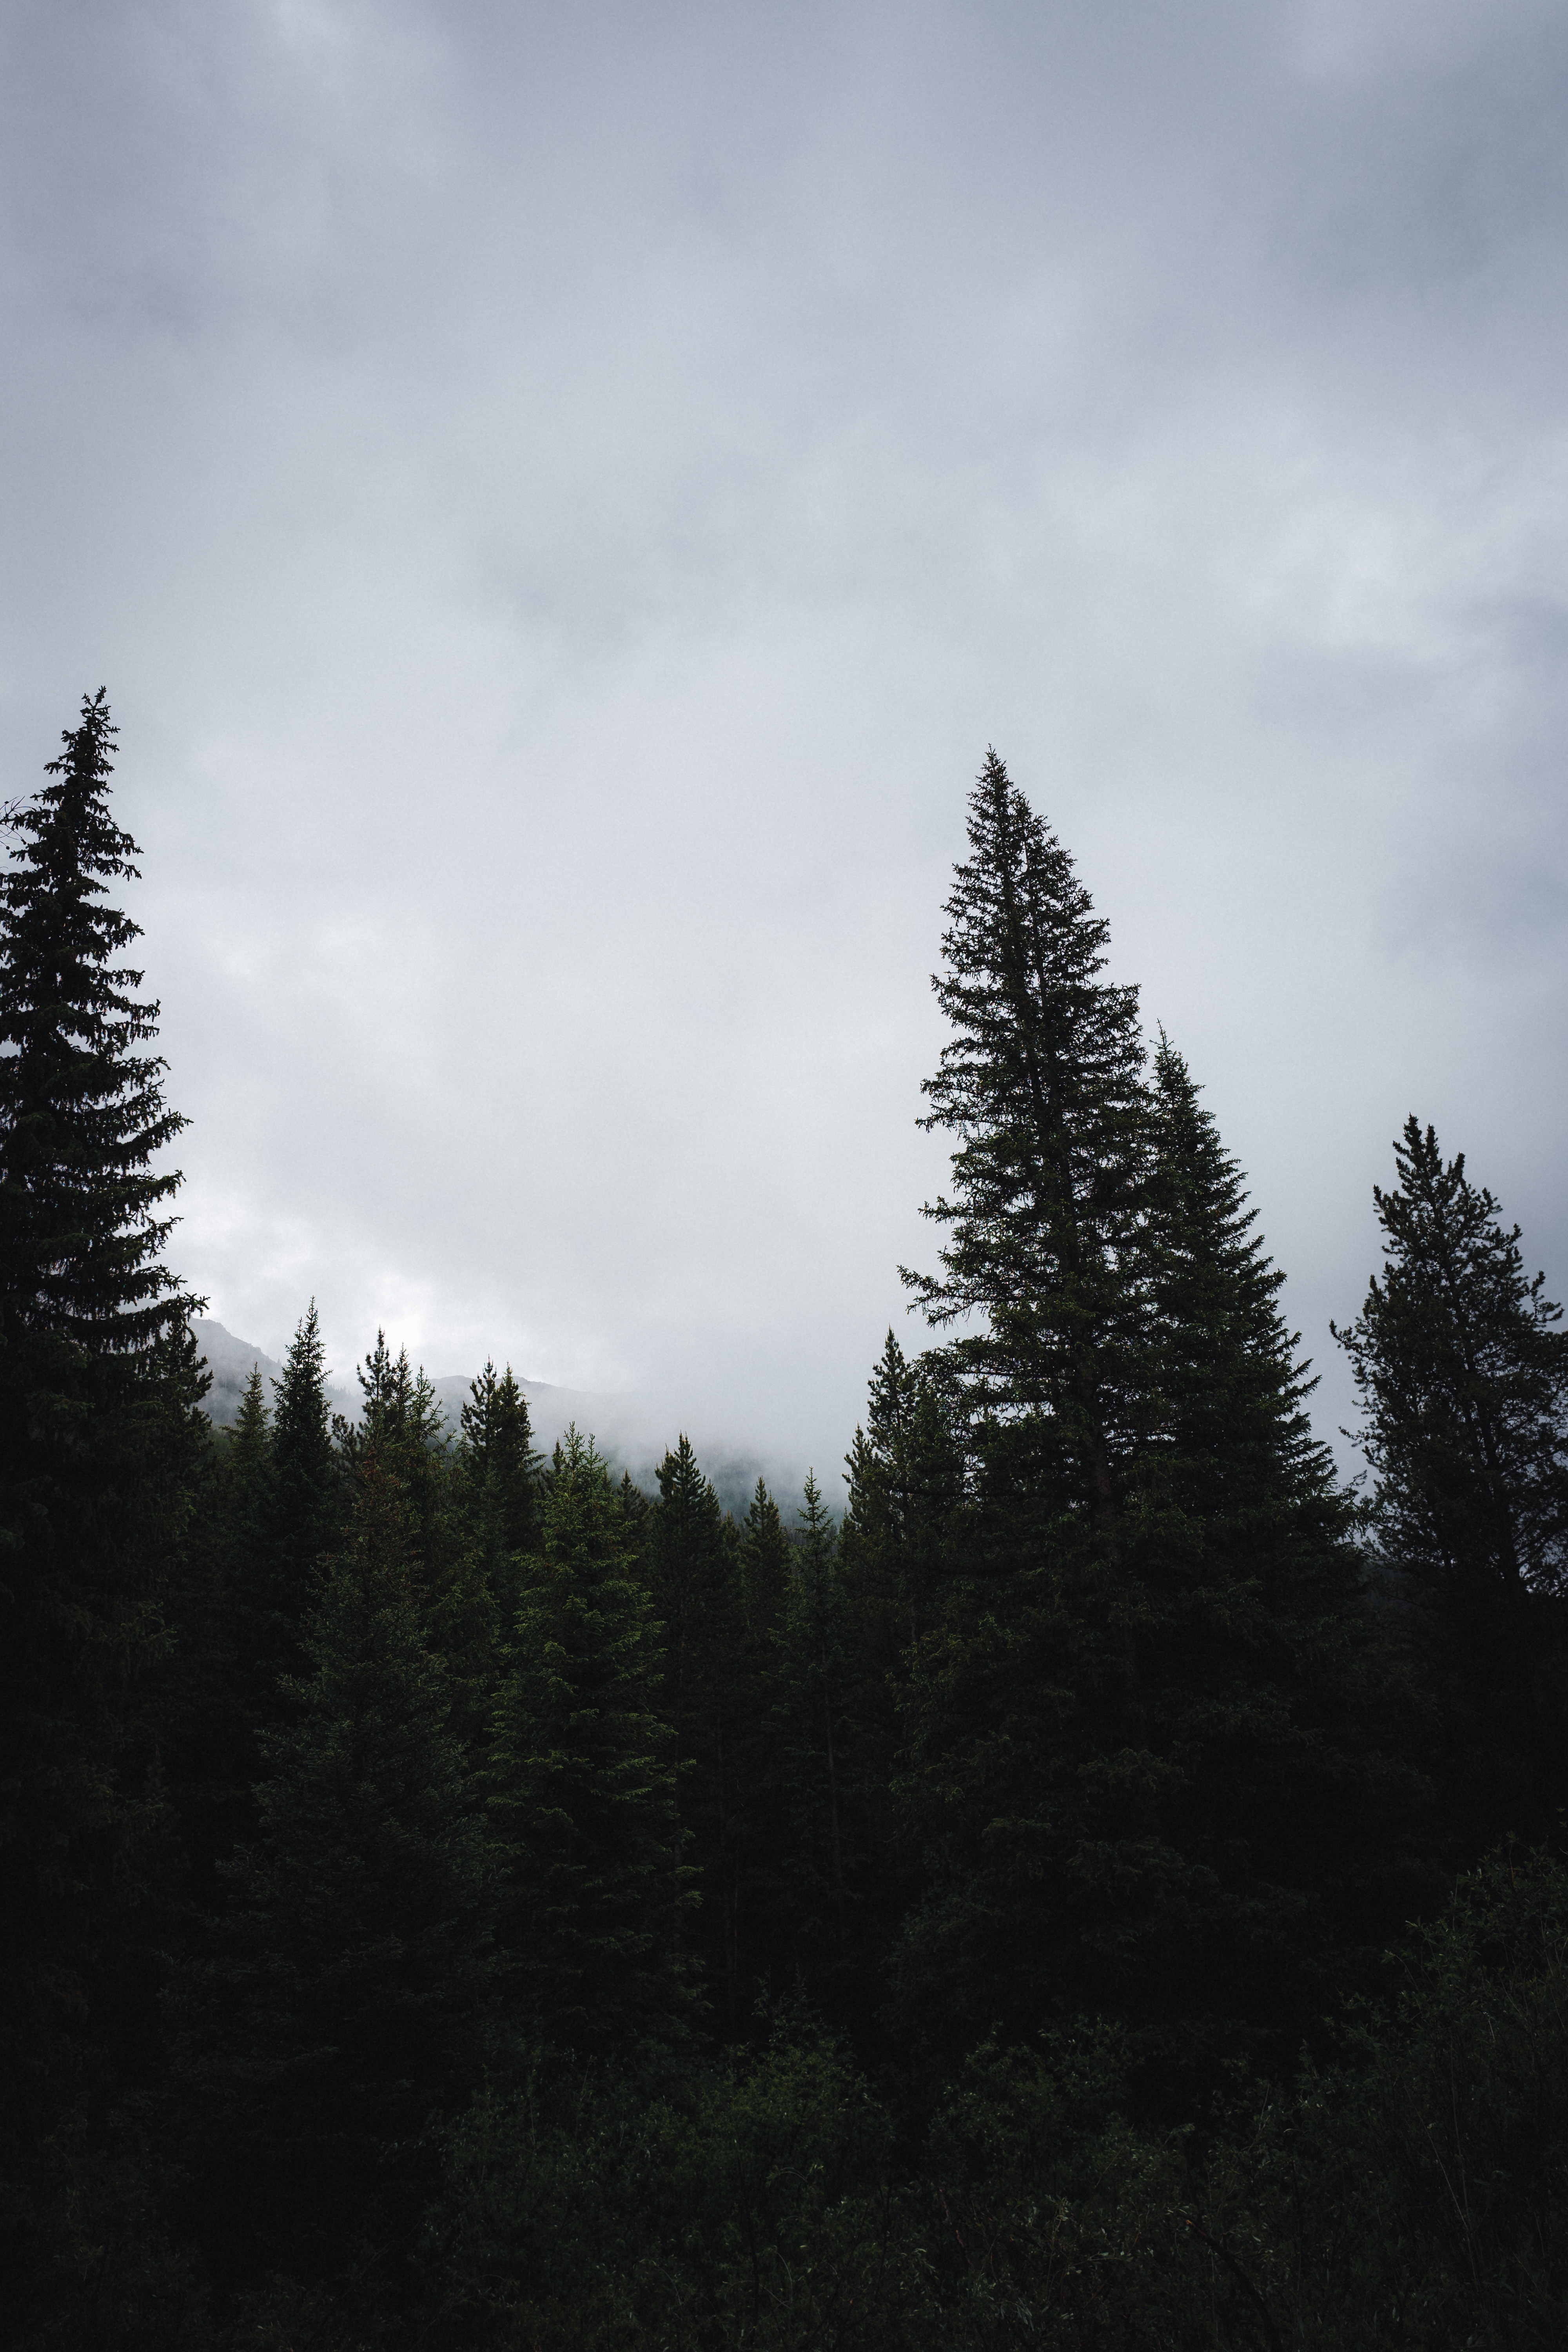 Dark Forest Background Tumblr